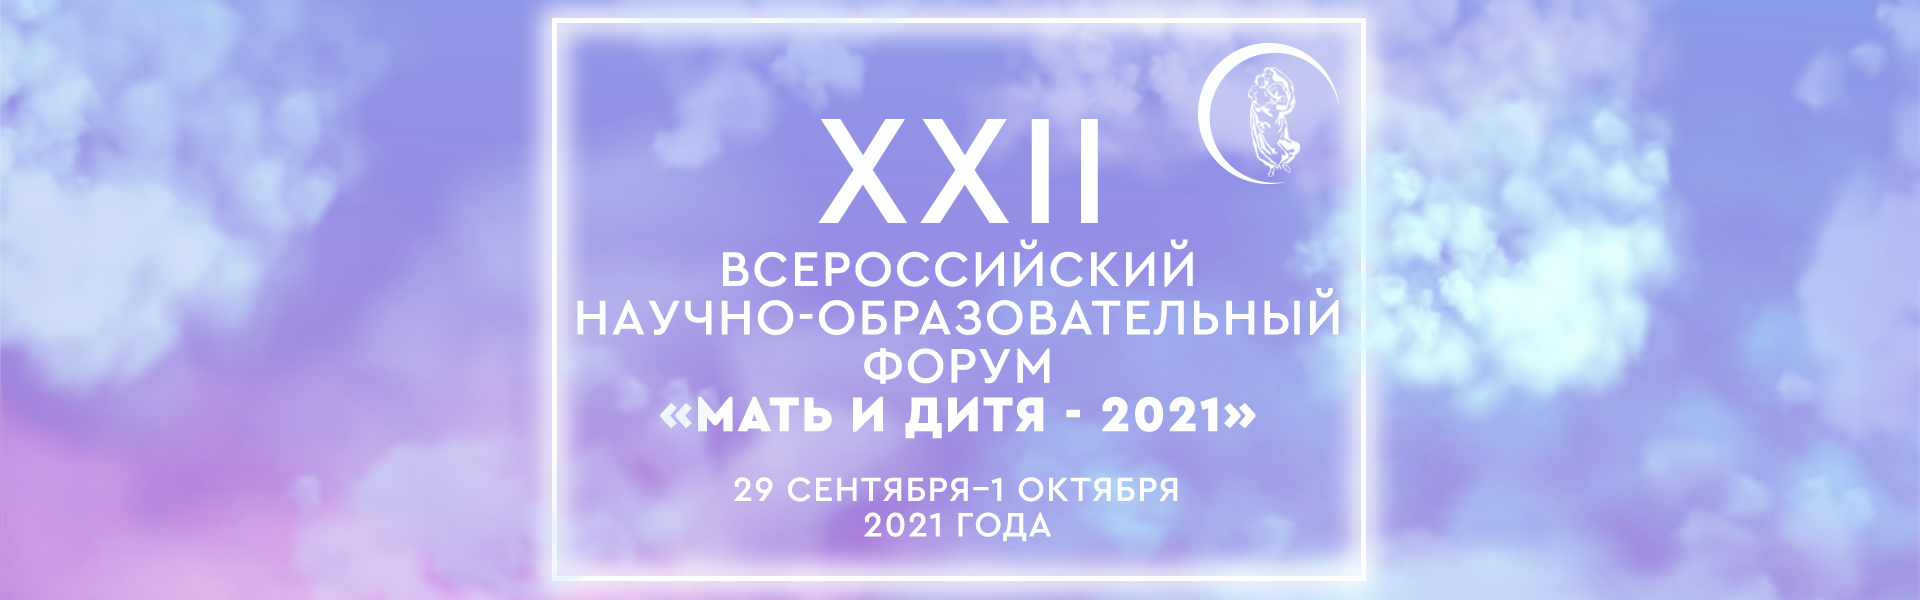 XXII Всероссийский научно-образовательный форум «Мать и дитя - 2021»